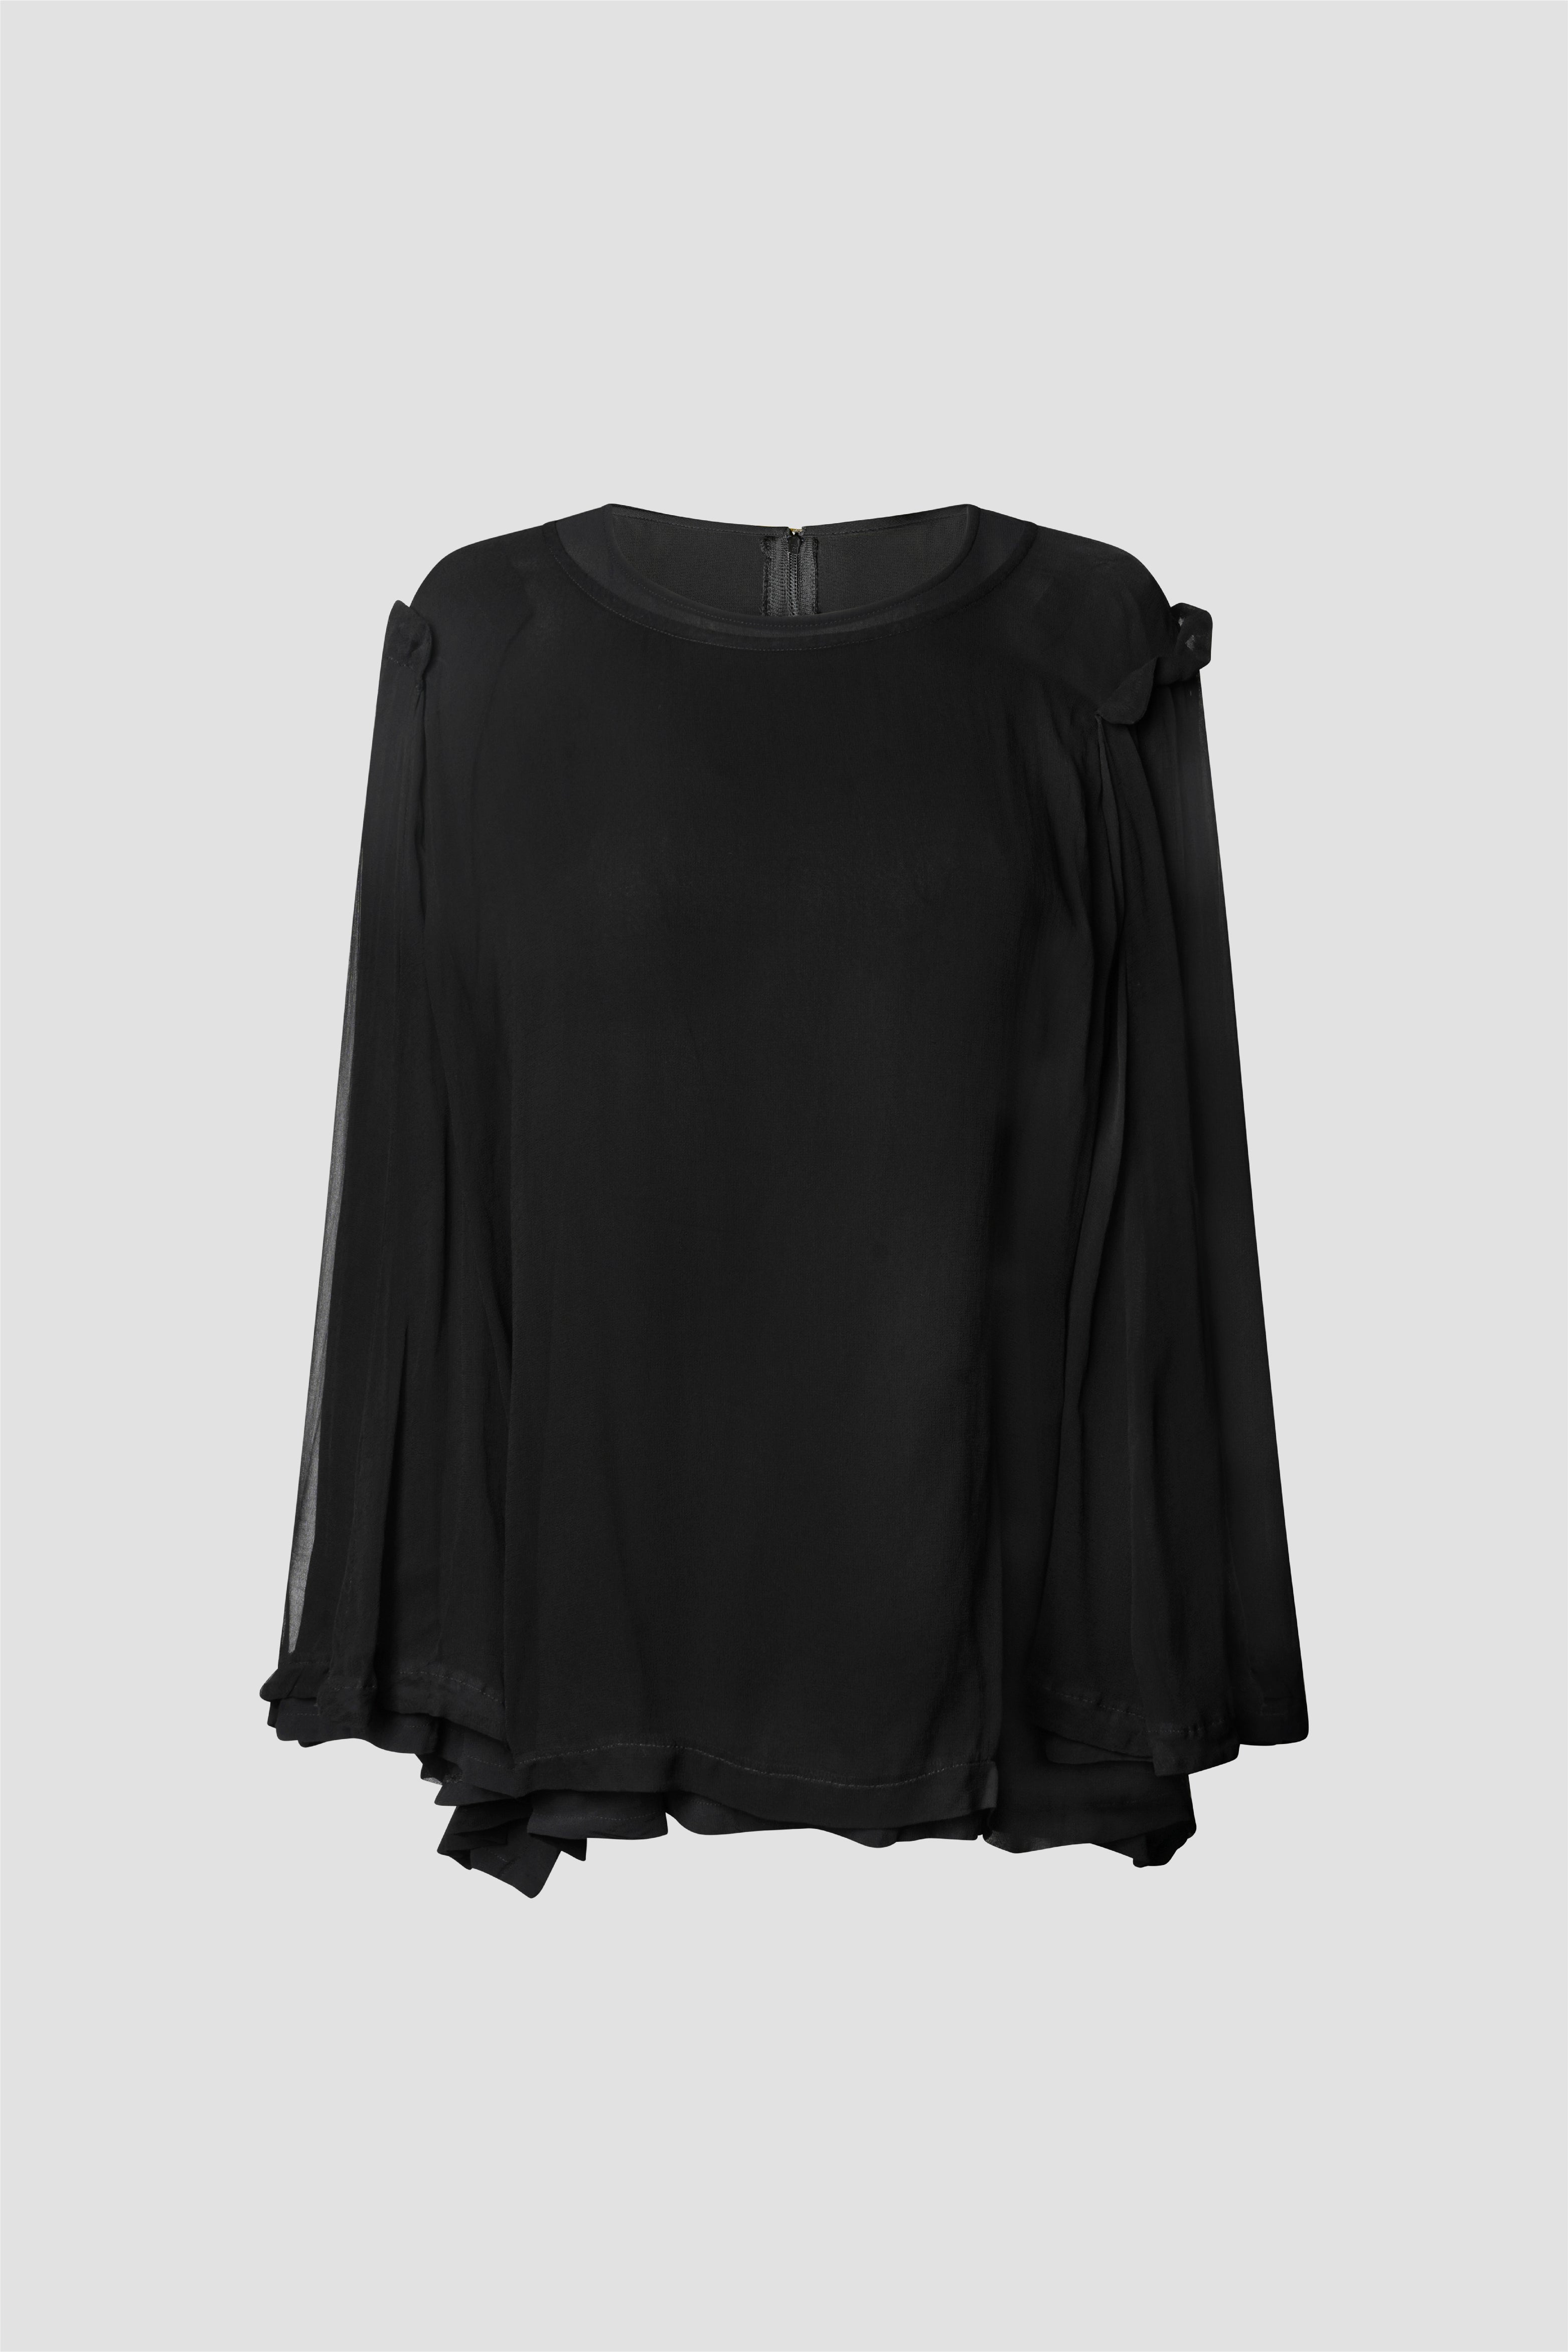 Selectshop FRAME - COMME DES GARÇONS COMME DES GARÇONS Shirt Shirts Concept Store Dubai